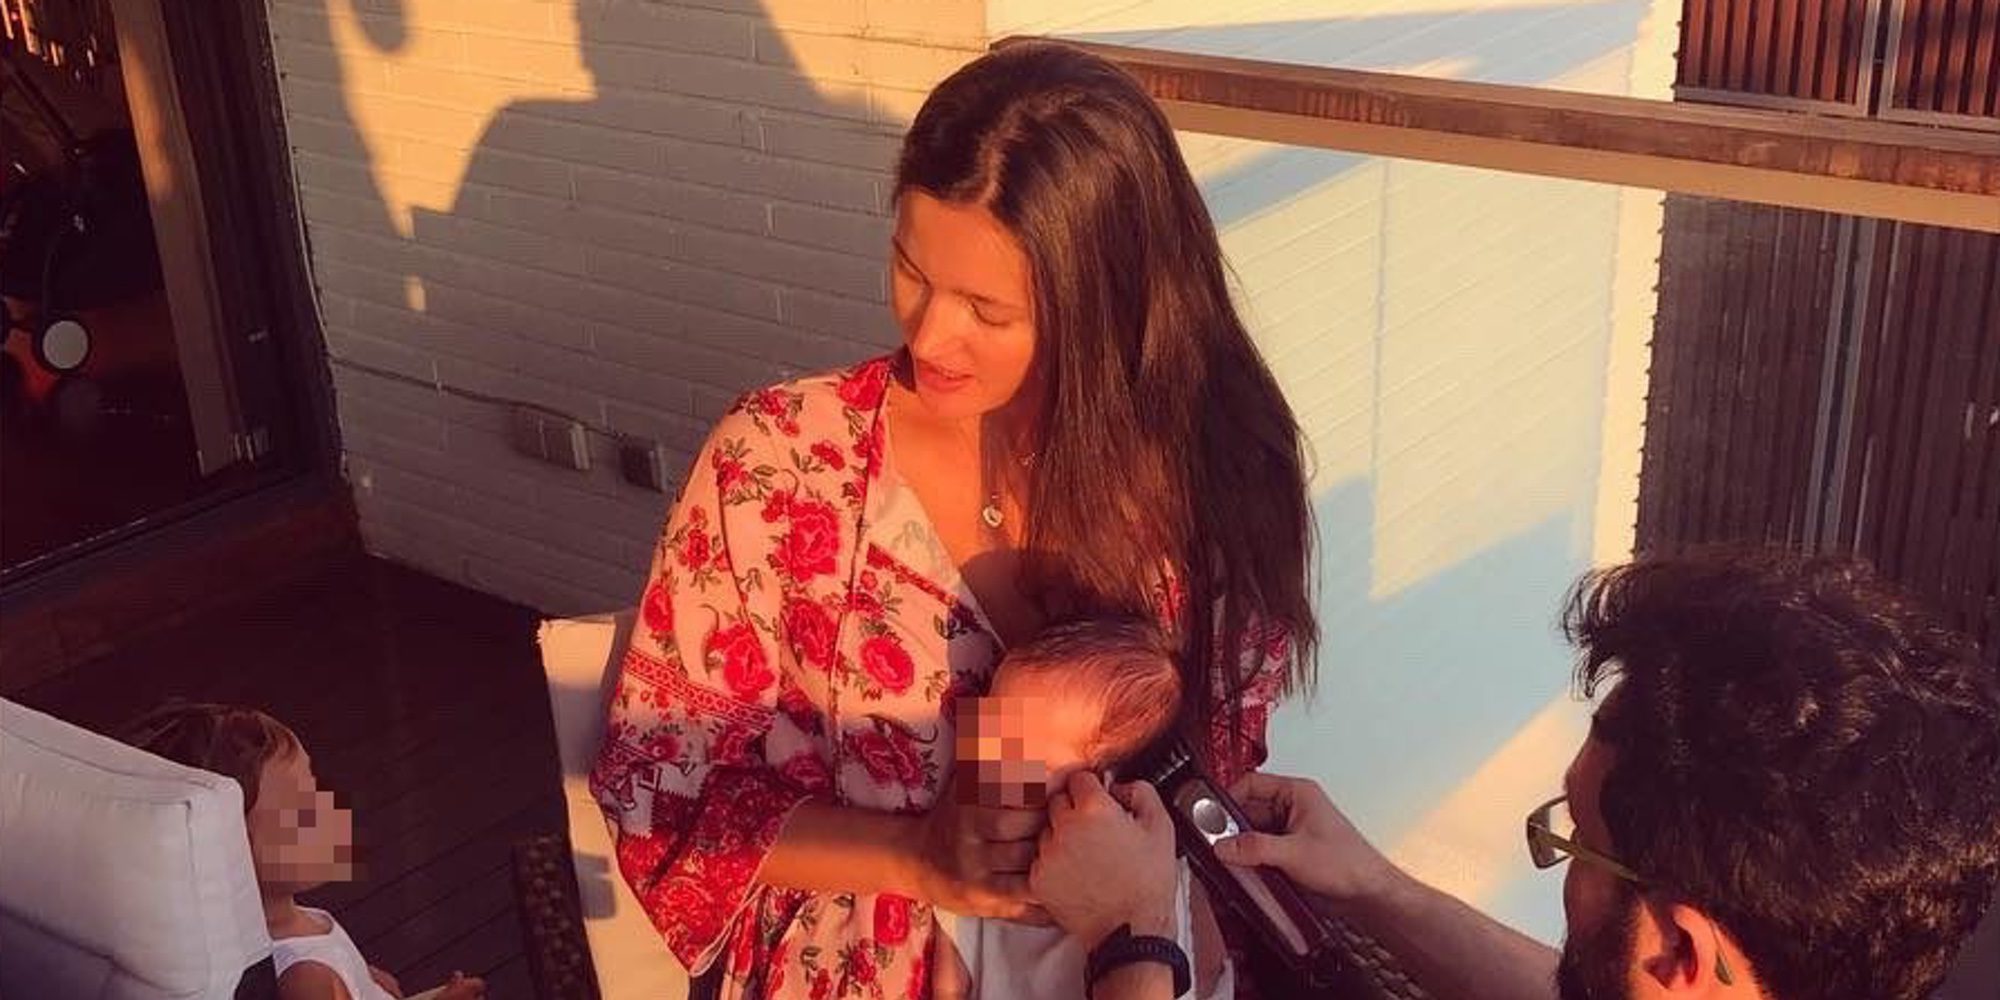 Malena Costa, loquita por el pequeño de la casa: "In love con Mario Suárez baby"